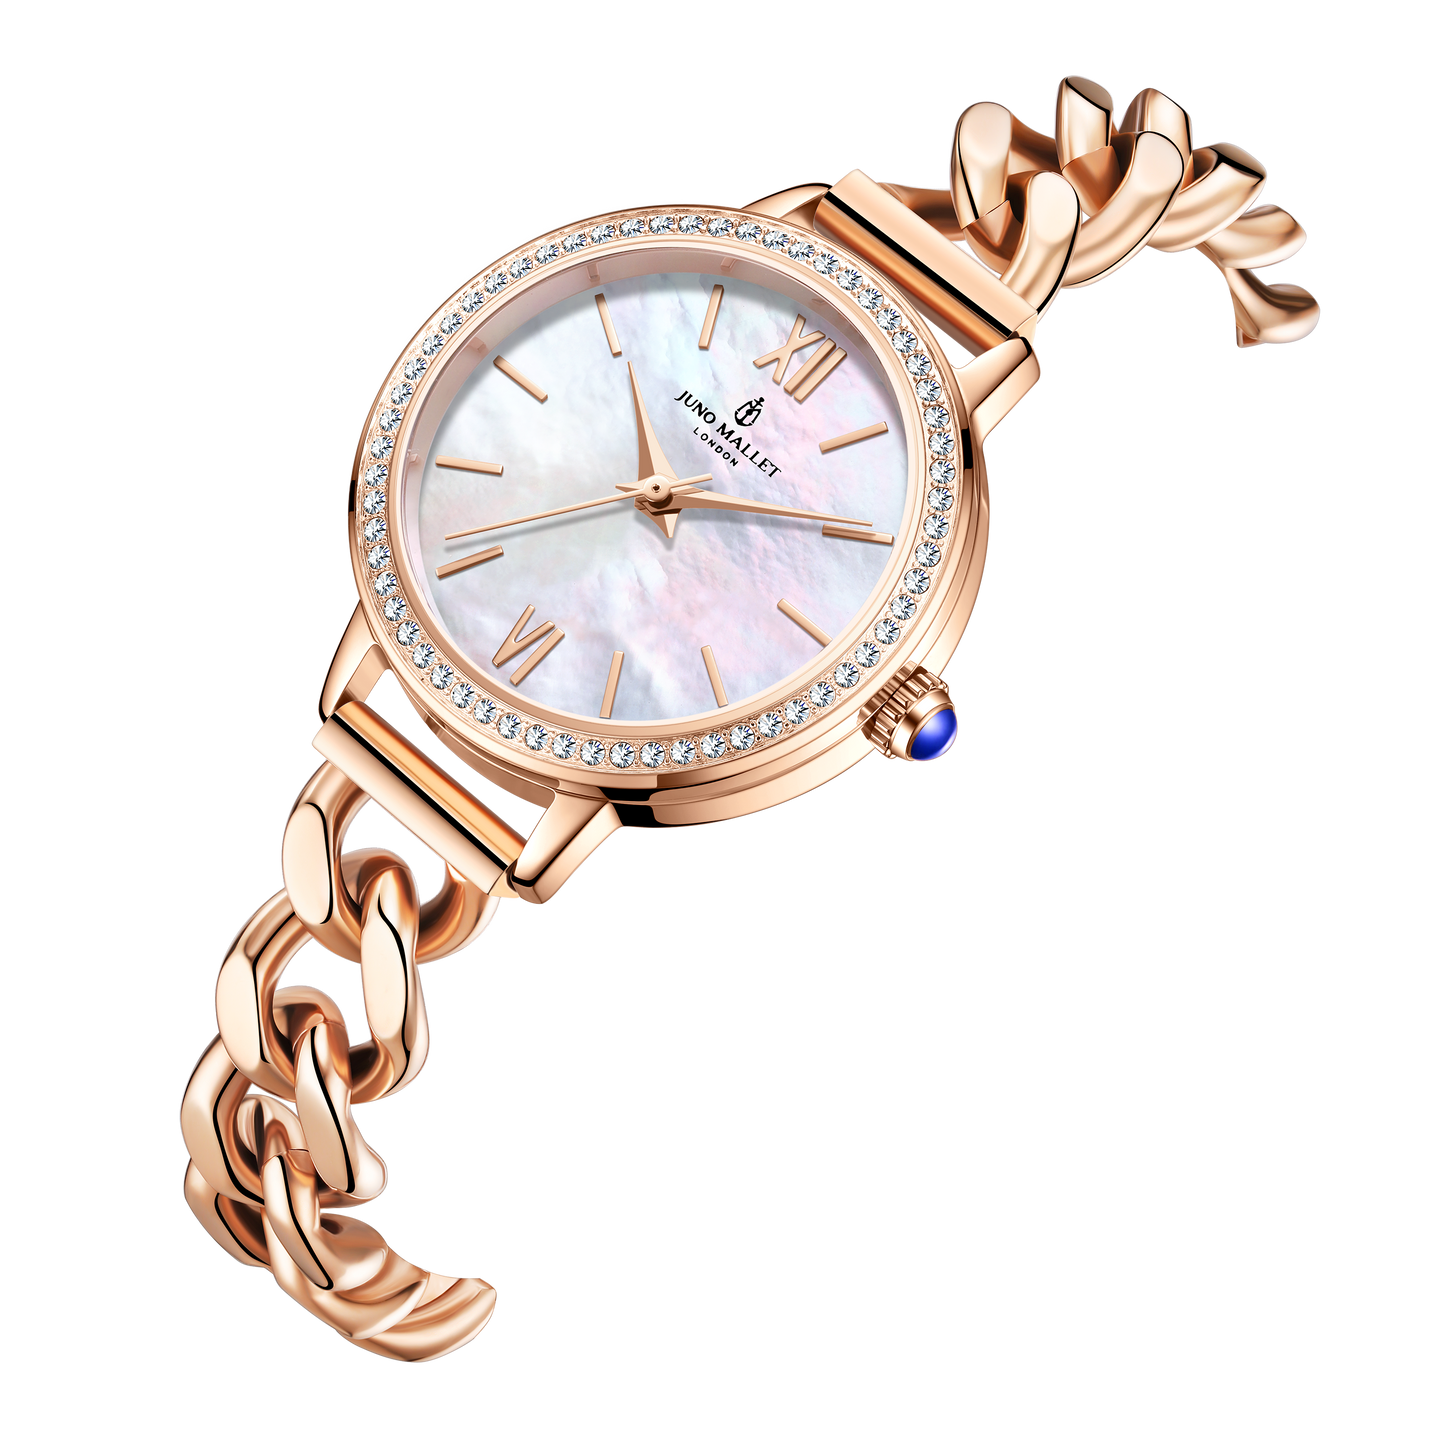 美人魚珍珠手錶與她的第二個錶盤復古孔雀石“臉”|浪漫奢華套餐 |給她的禮物